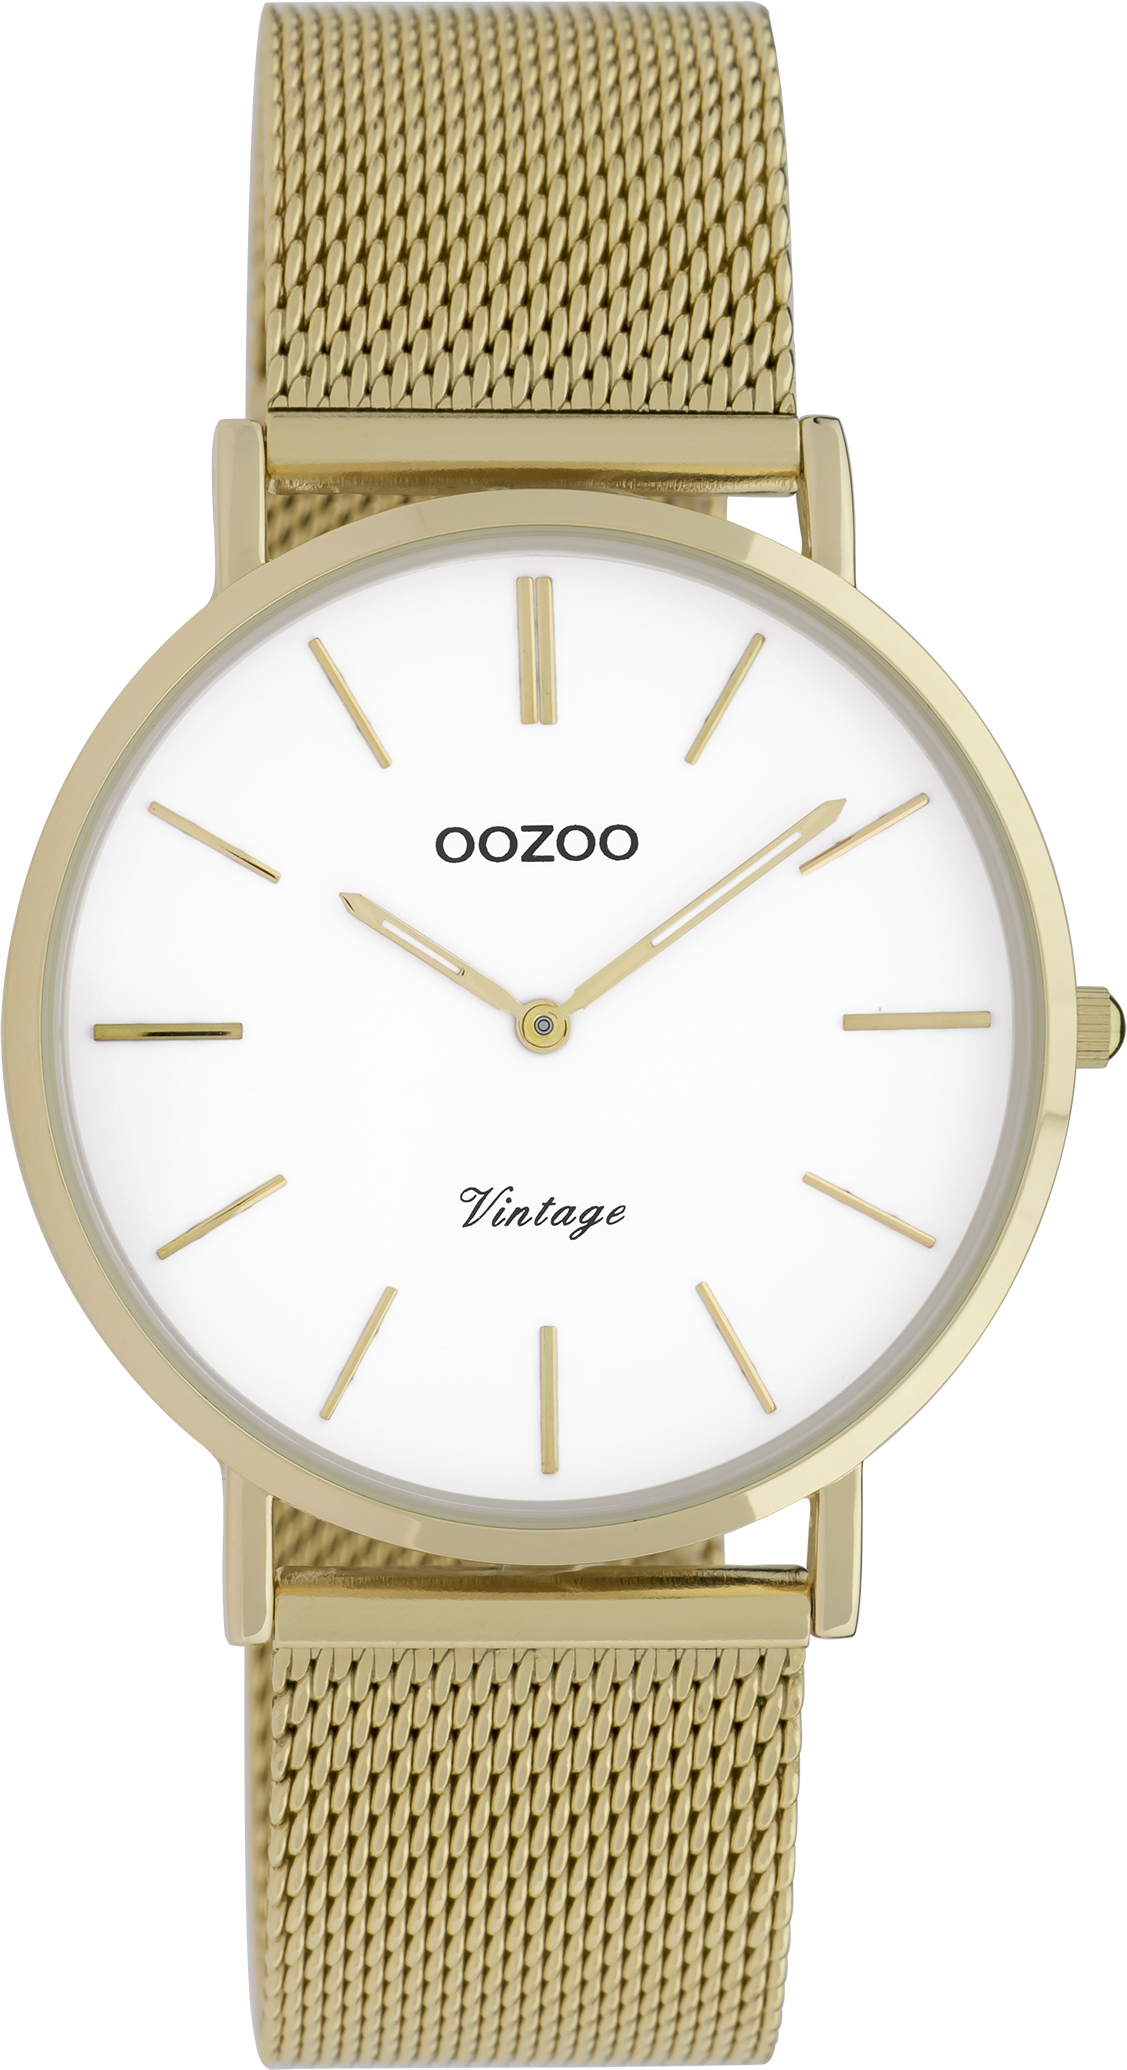 Ρολόι OOZOO Vintage - C9910 χρυσό με διάμετρο κάσας 36mm και μεταλλικό μπρασελέ.